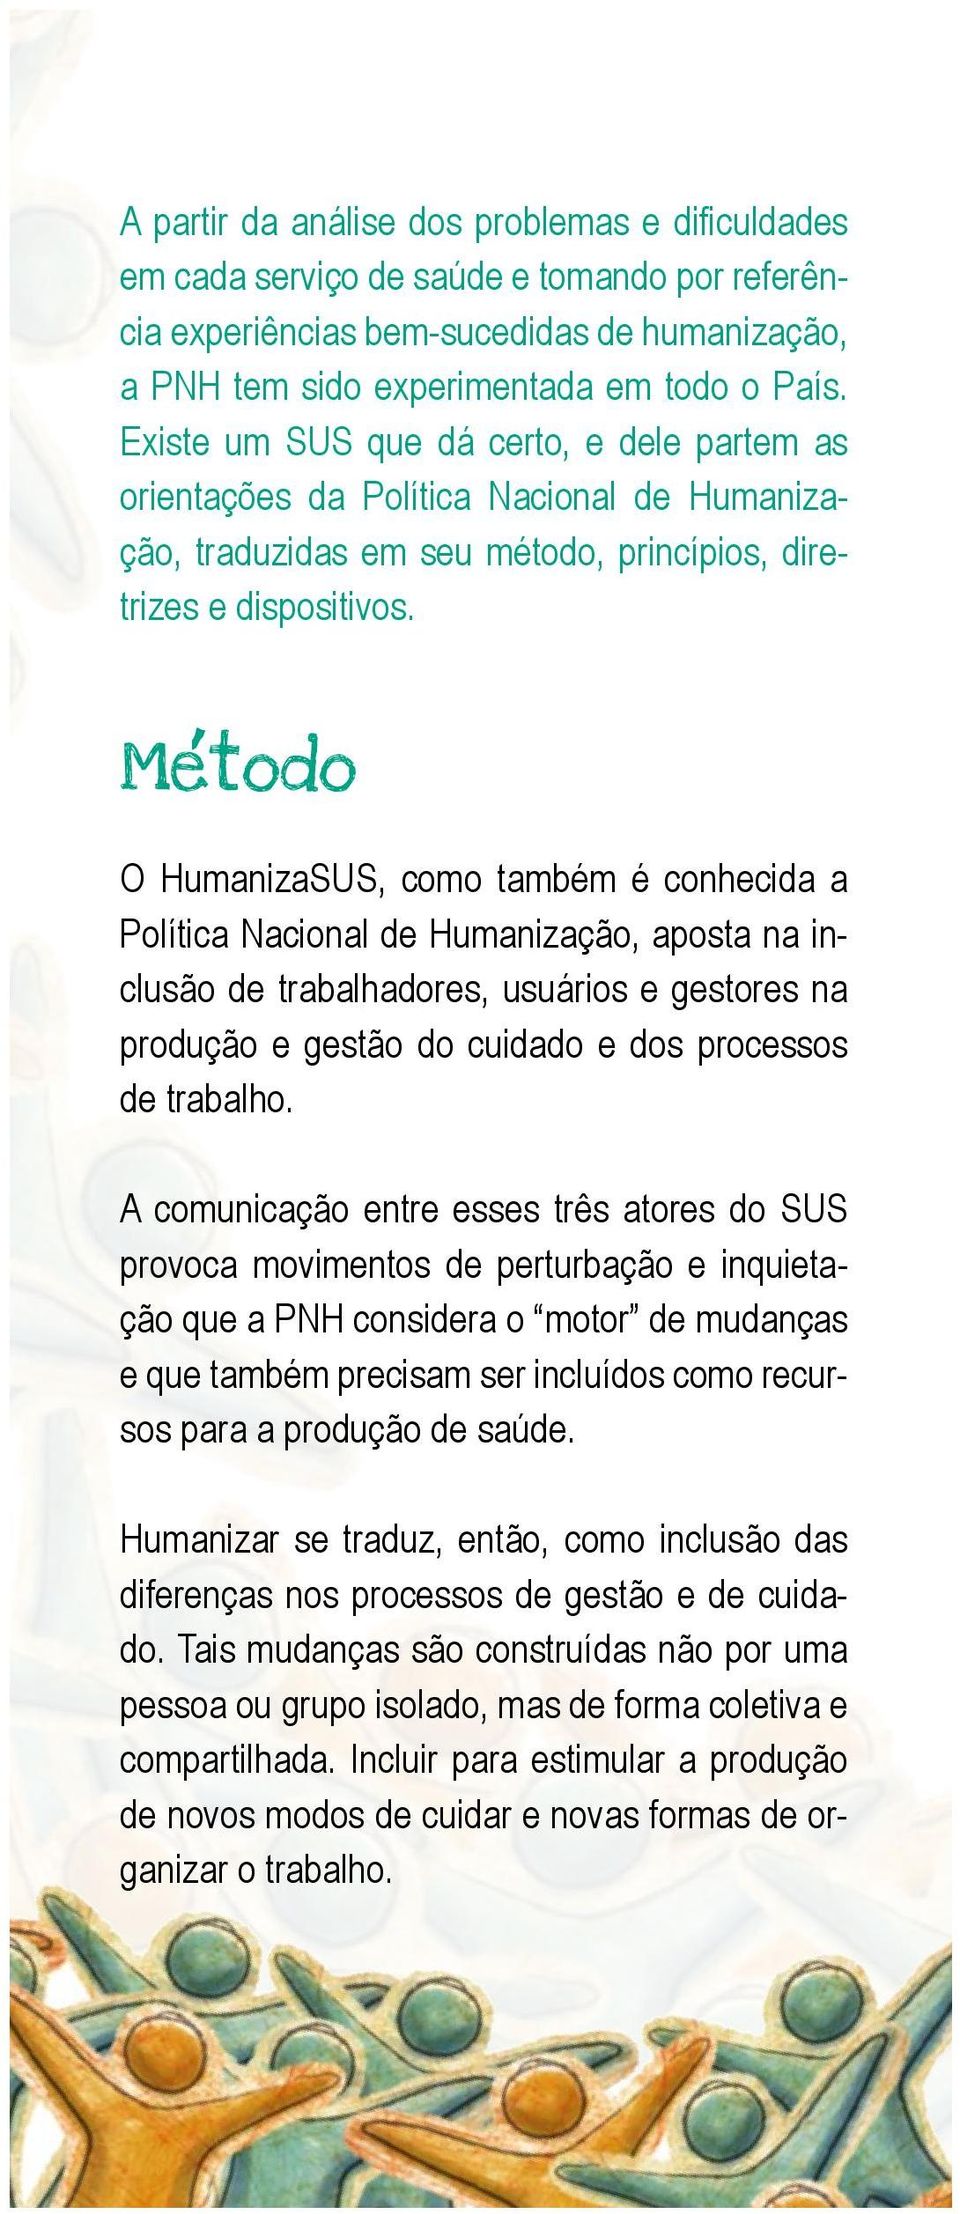 , Metodo O HumanizaSUS, como também é conhecida a Política Nacional de Humanização, aposta na inclusão de trabalhadores, usuários e gestores na produção e gestão do cuidado e dos processos de